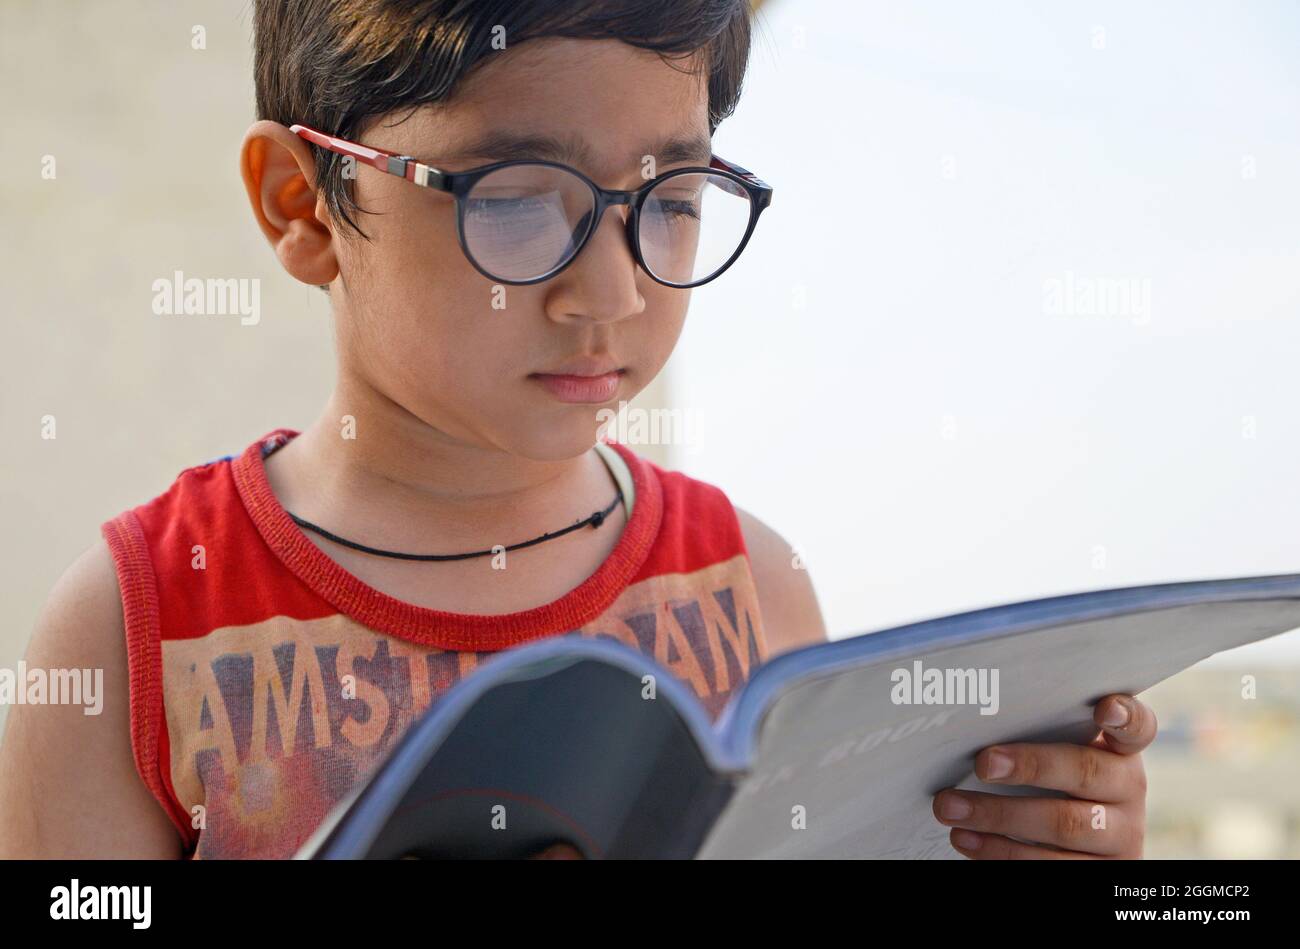 Garçon indien avec livre à portée de main Banque D'Images